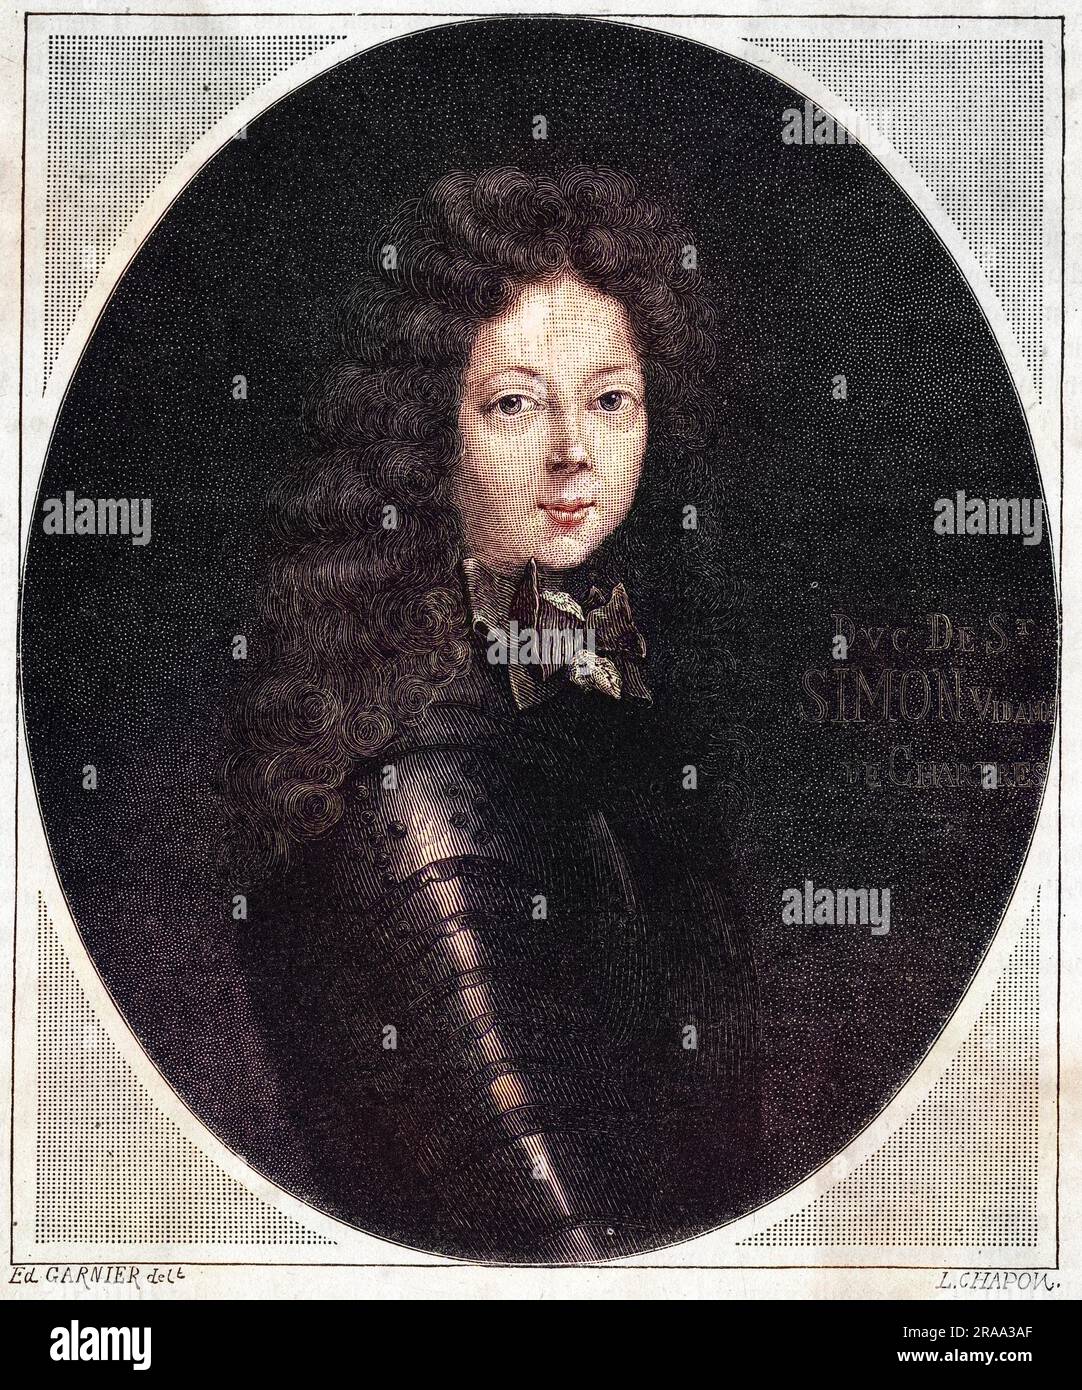 LOUIS de ROUVROY, duc de SAINT-SIMON - soldat français, courtier et diplomate, connu spécialement pour ses mémoires de la cour. Ici comme un jeune homme. Date: 1675 - 1755 Banque D'Images